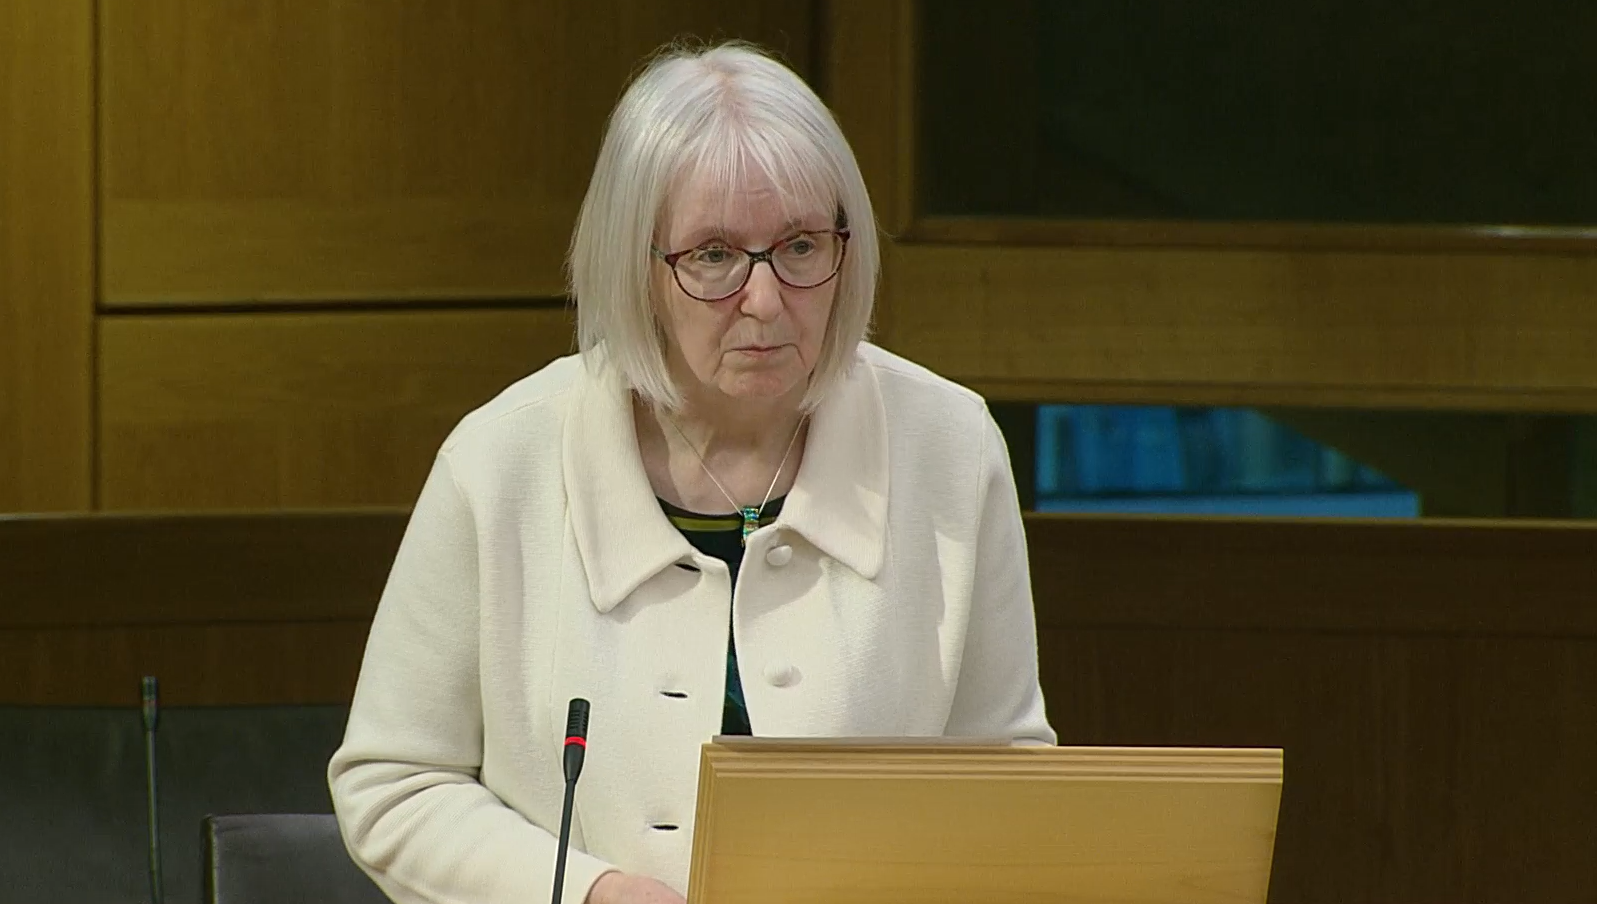 Beatrice Wishart MSP speaks in the Scottish Parliament chamber